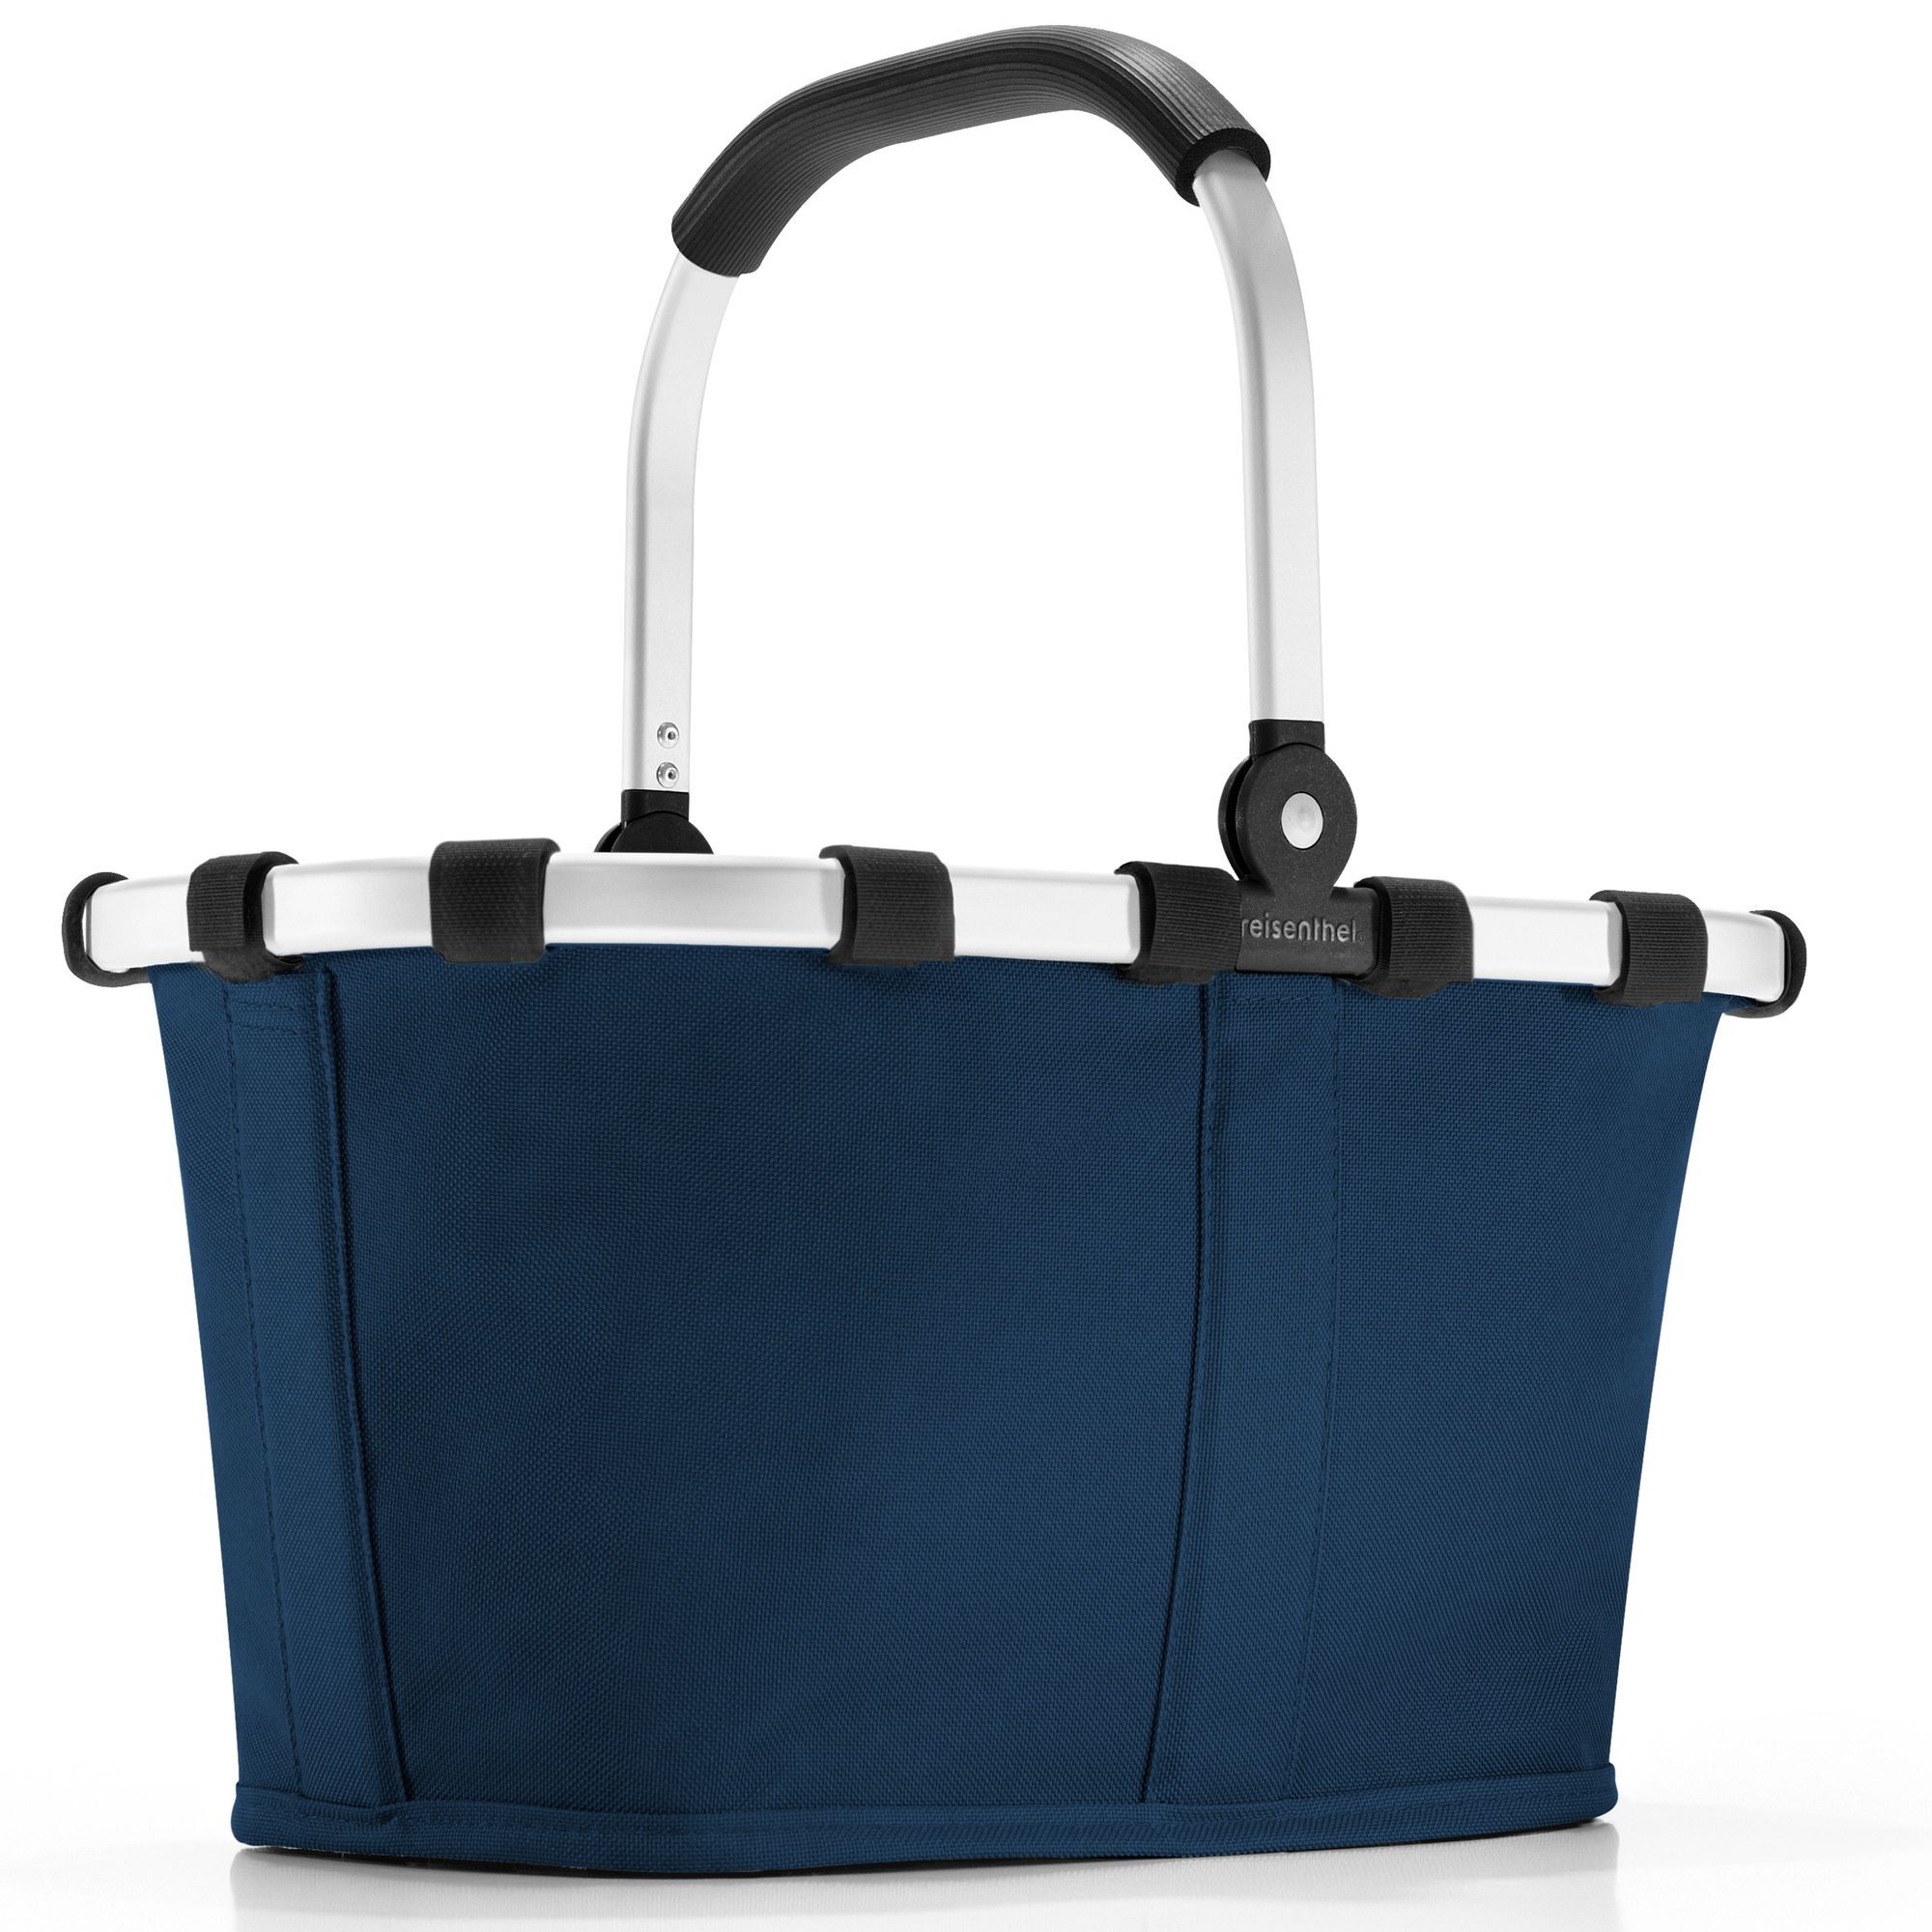 Сумка шоппер Reisenthel Carrybag Einkaufstasche 33см, цвет dark blue